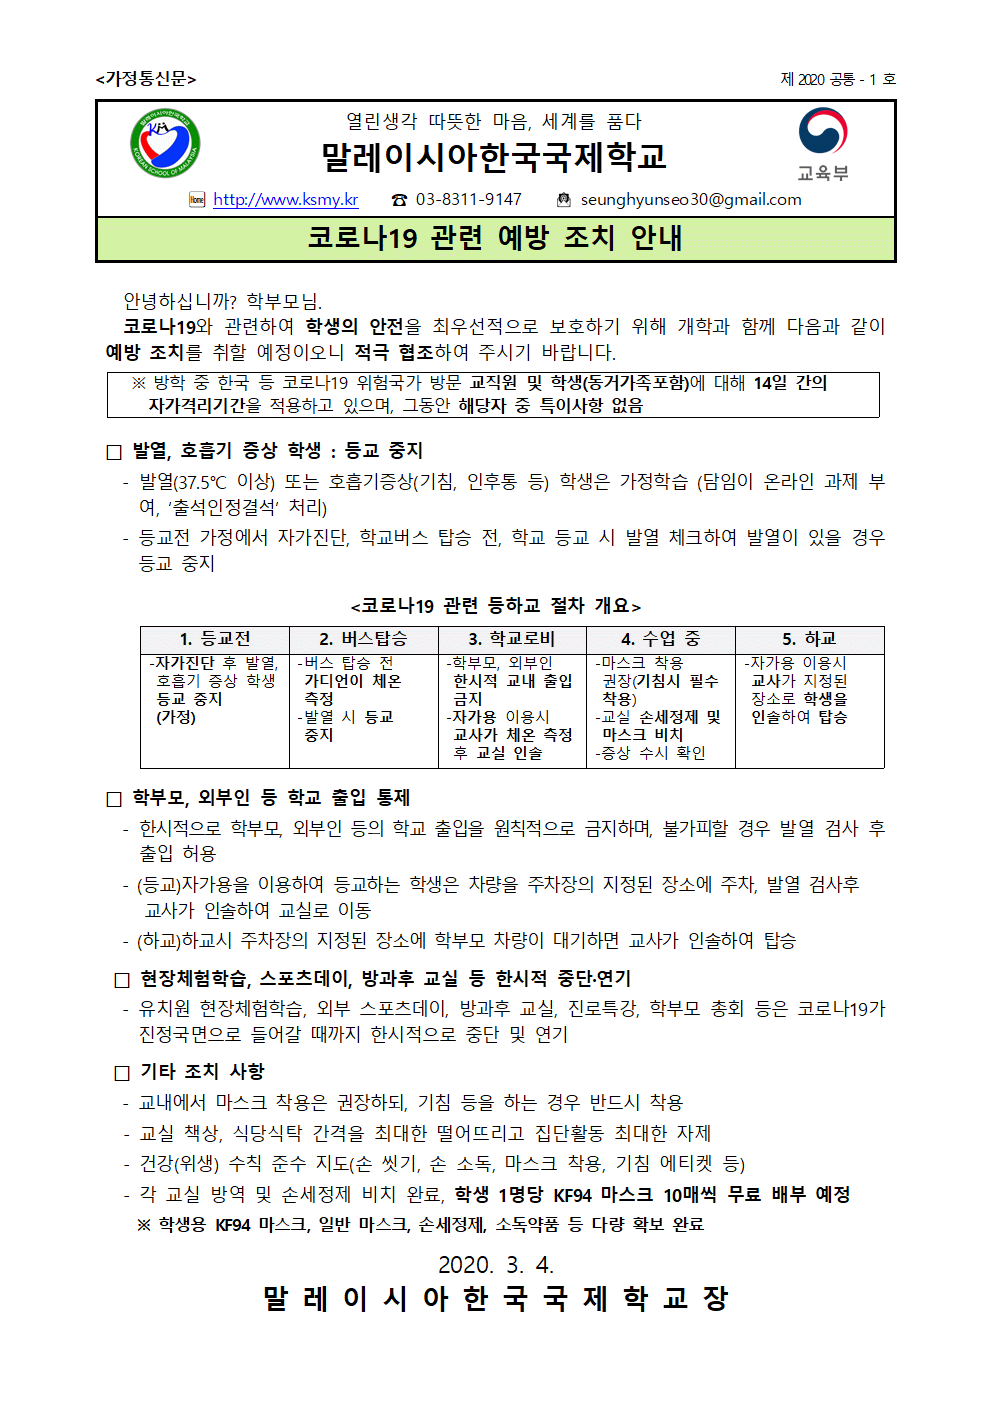 코로나 관련 가정통신문_20200303-2001.gif